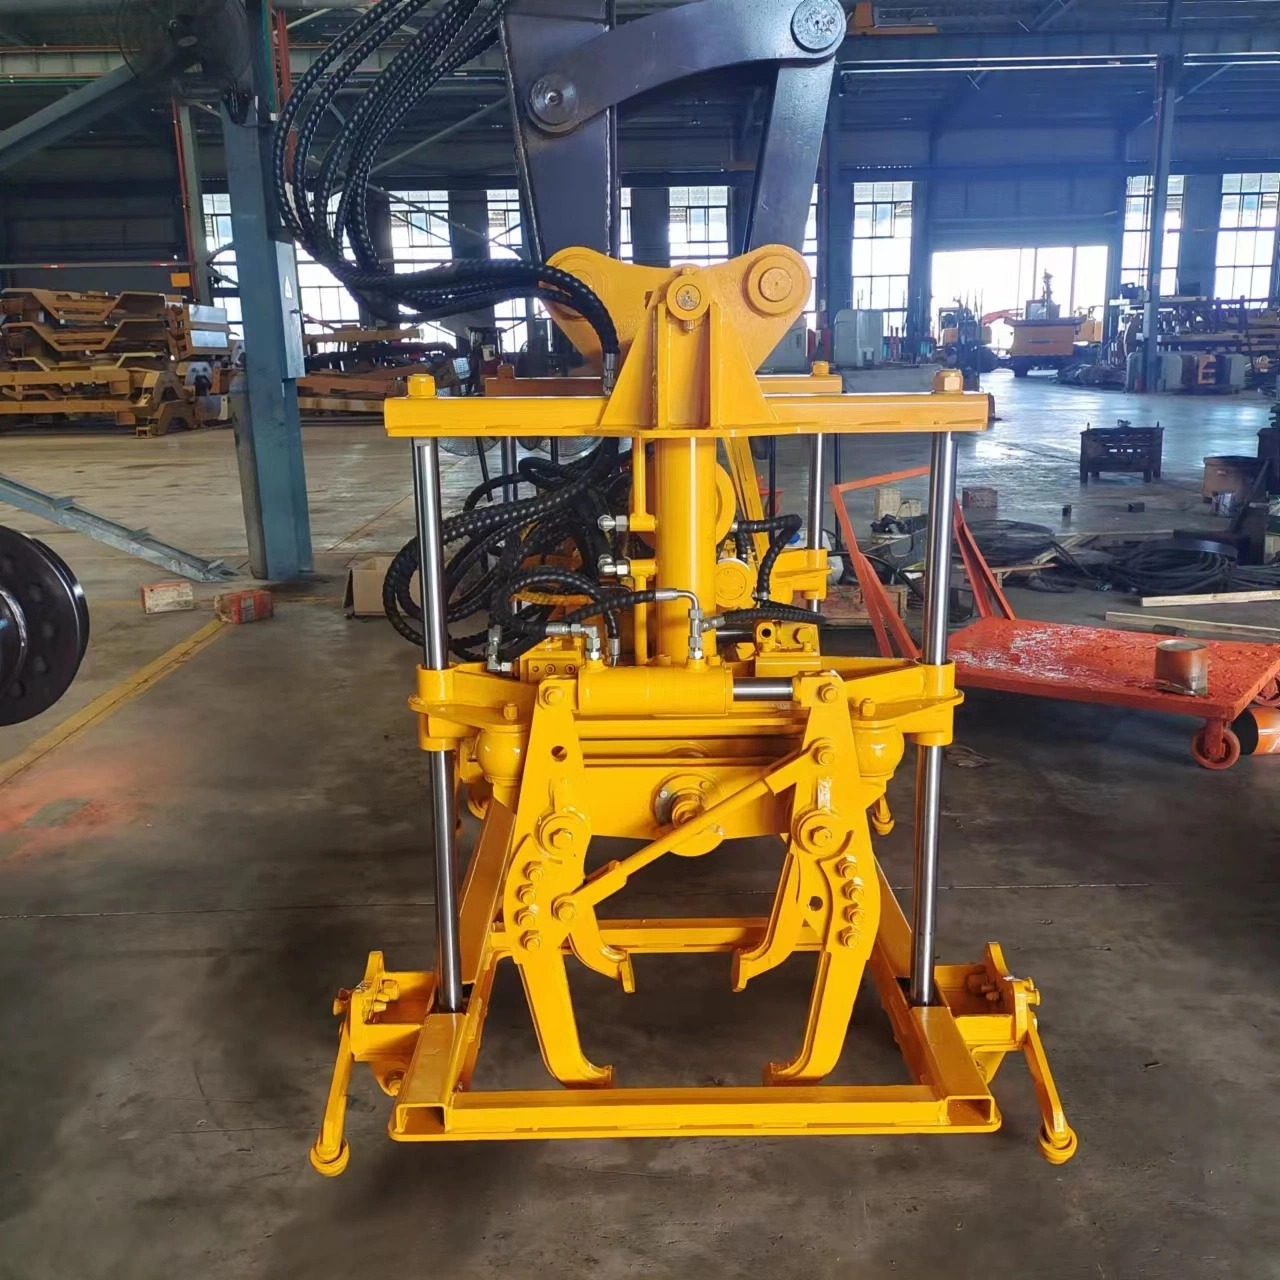 Mantenimiento de la cadena para vehículos de unidad de tamper de amarre desarrollados por JG Máquina excavadora de ferrocarril